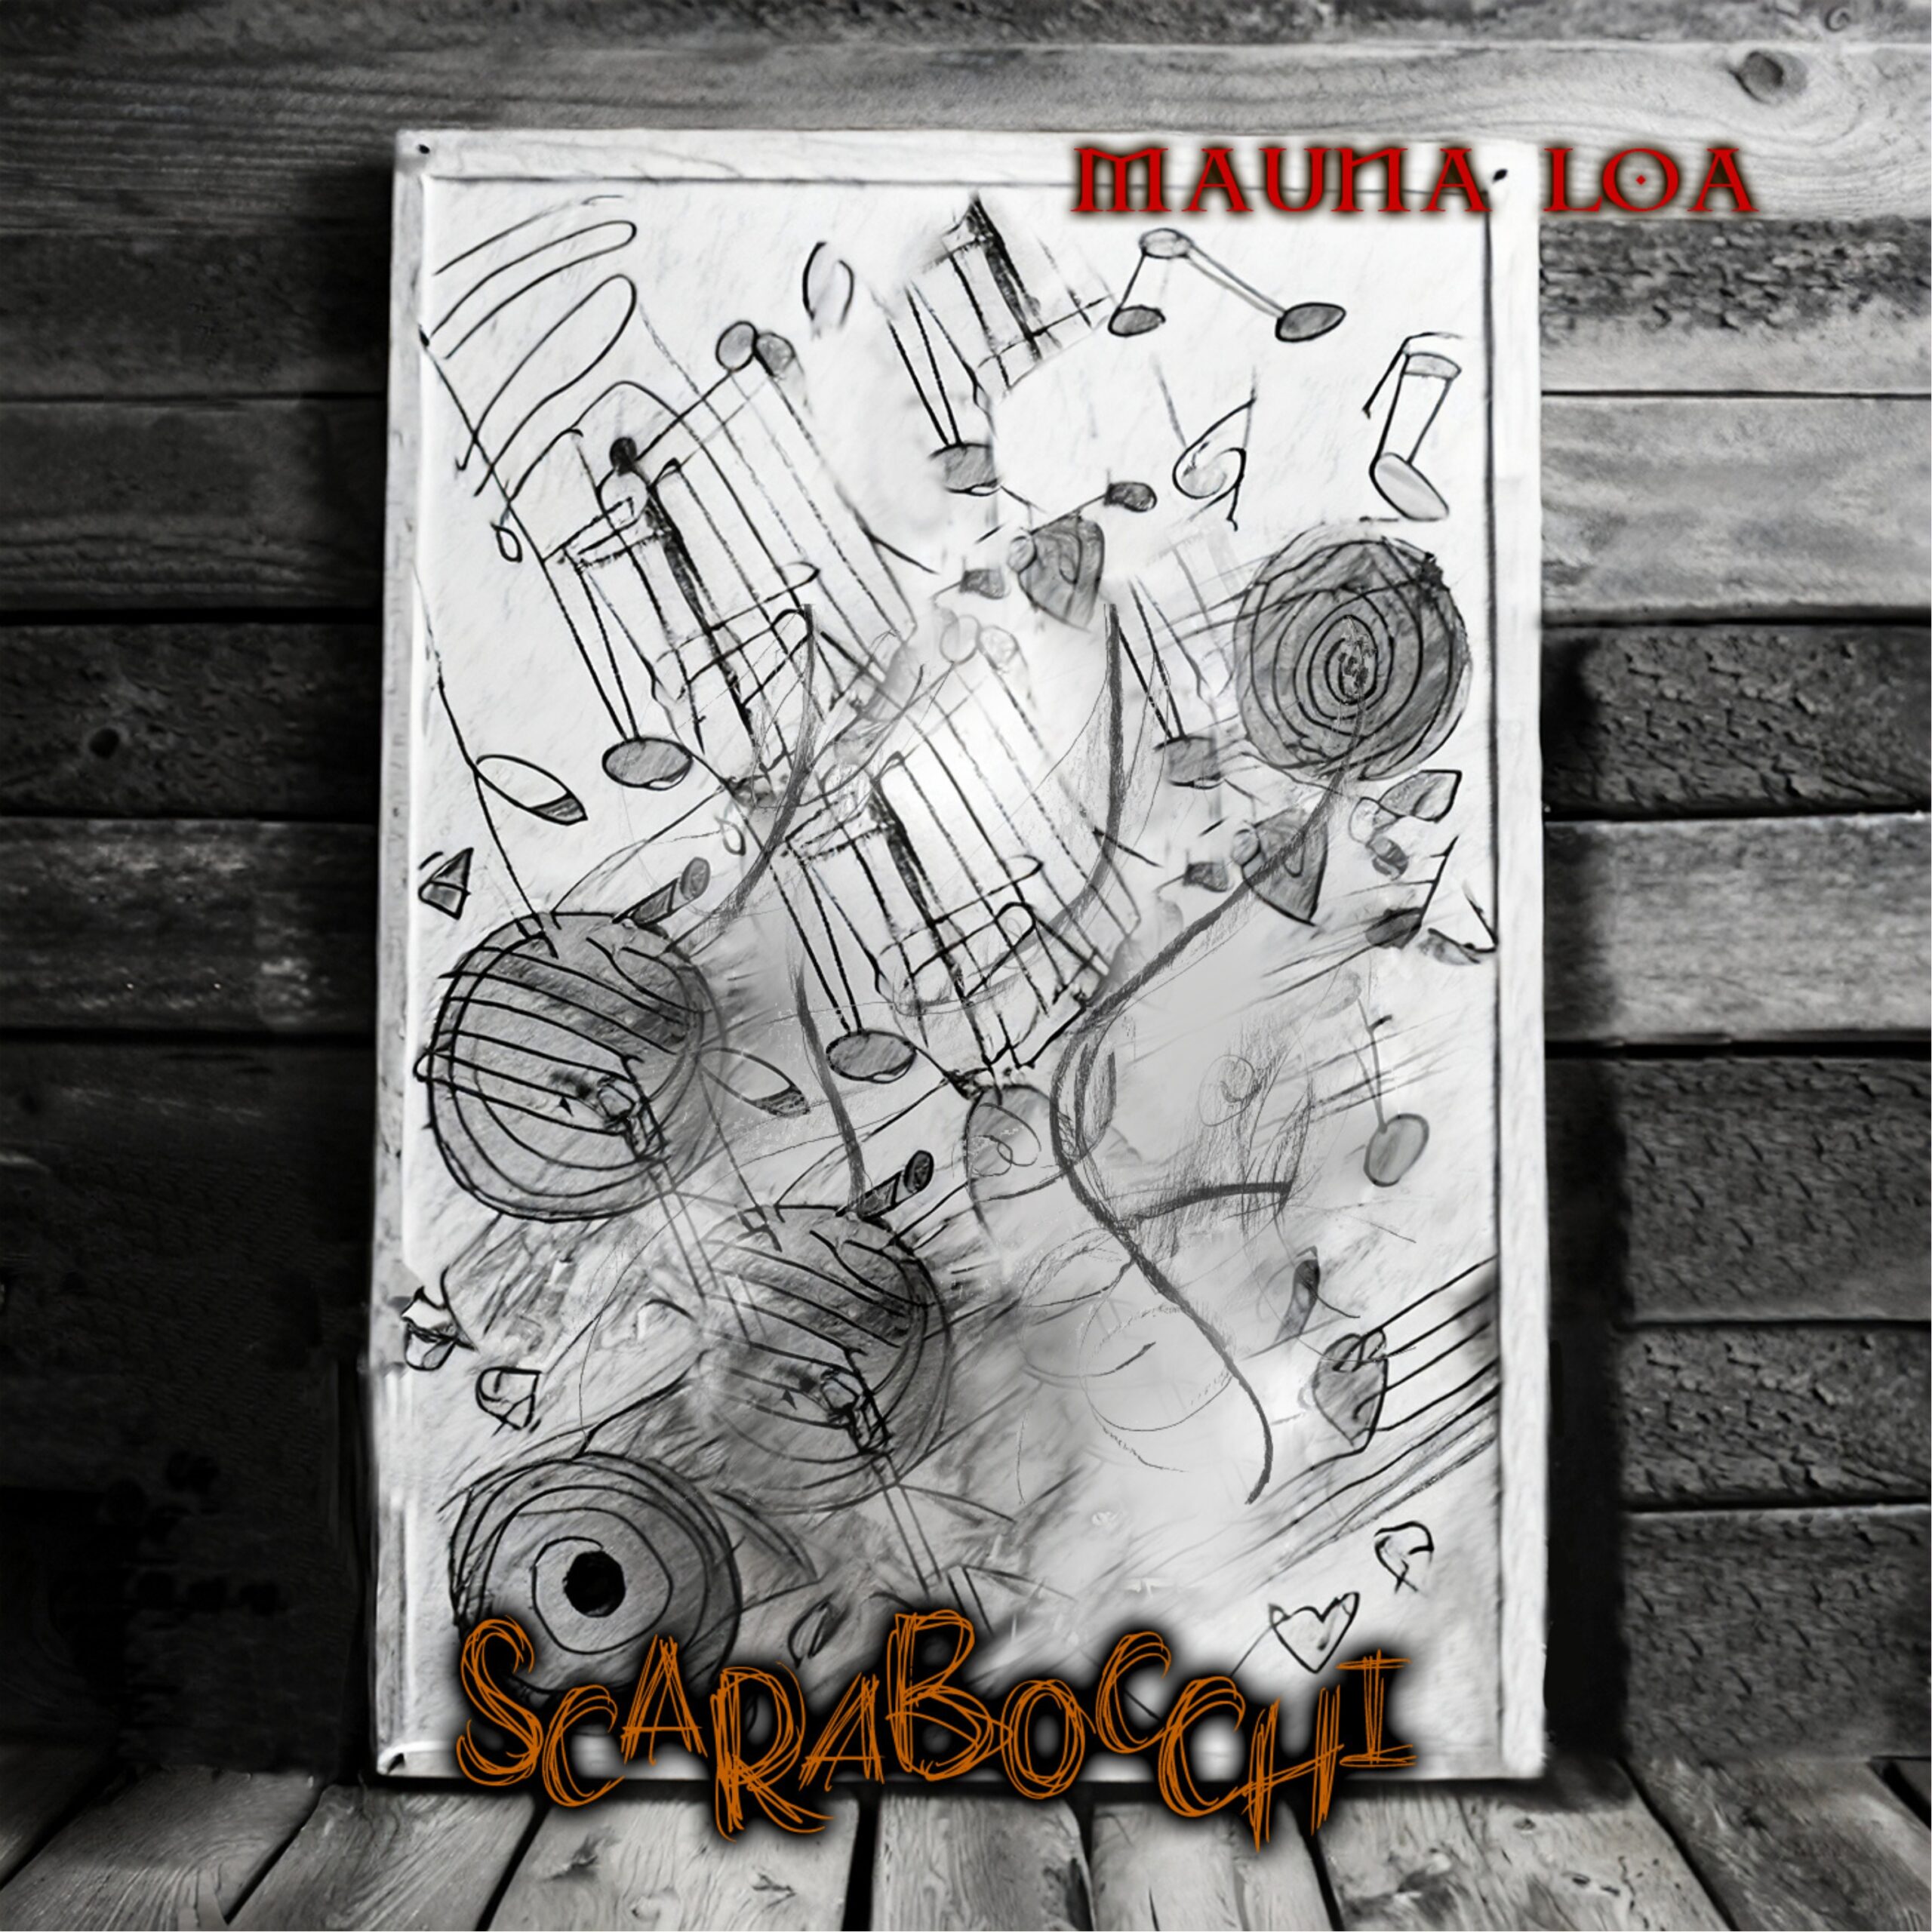 Finalmente fuori il secondo album dei Mauna Loa, “Scarabocchi”